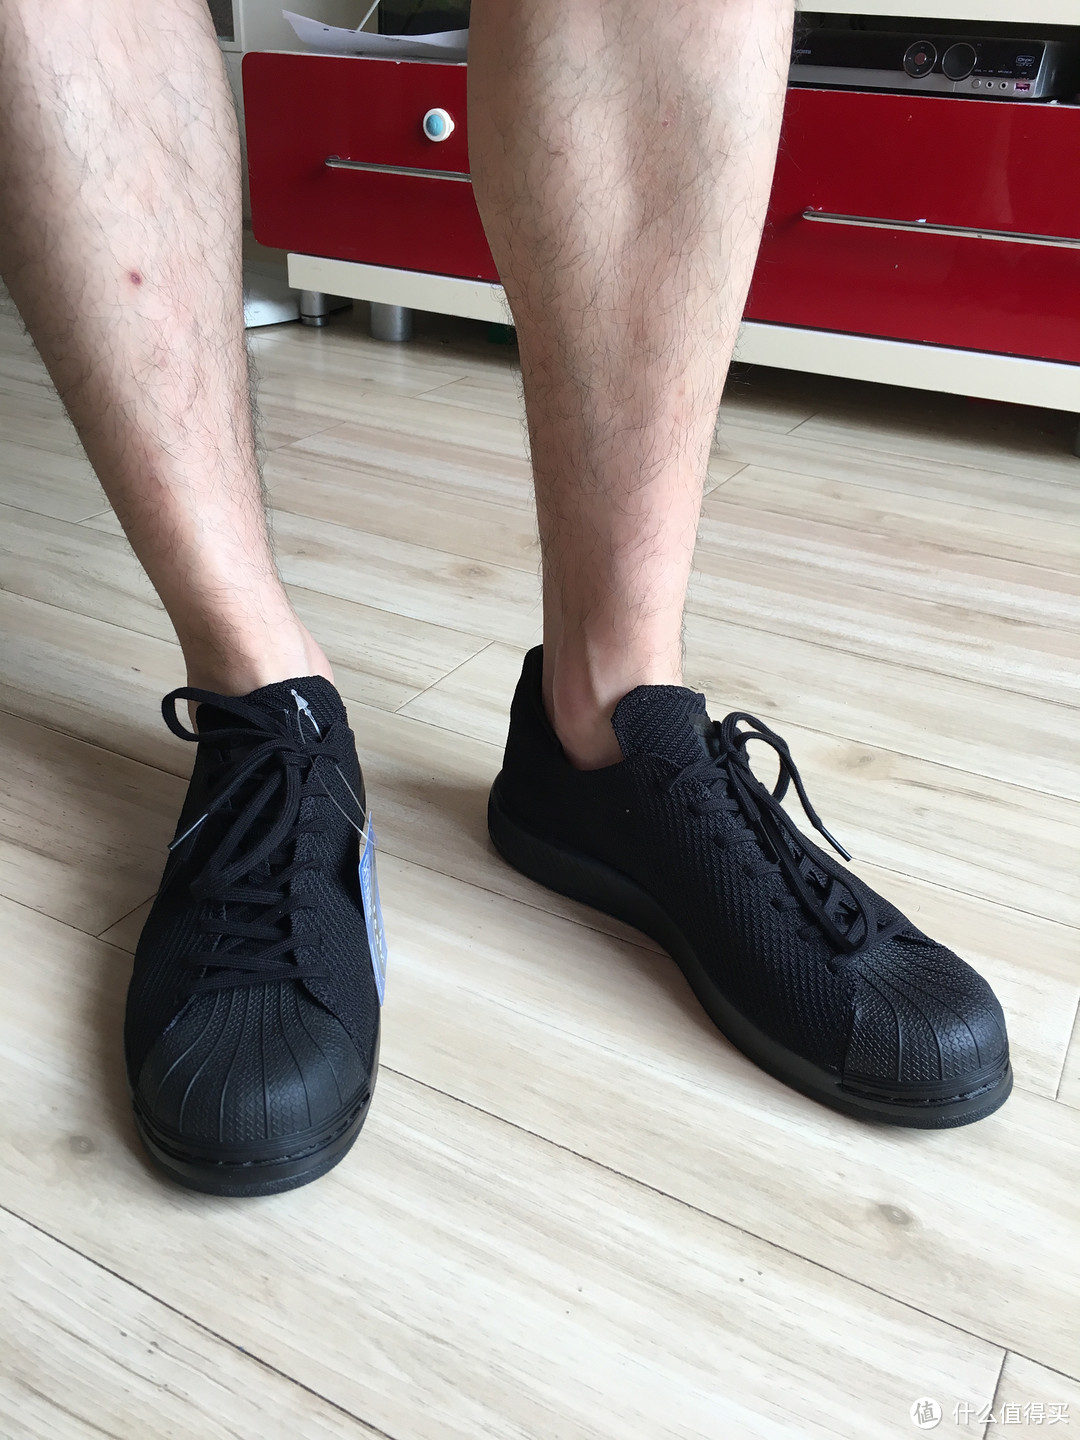 小黑鞋 adidas 阿迪达斯 Superstar Bounce Primeknit 休闲运动鞋